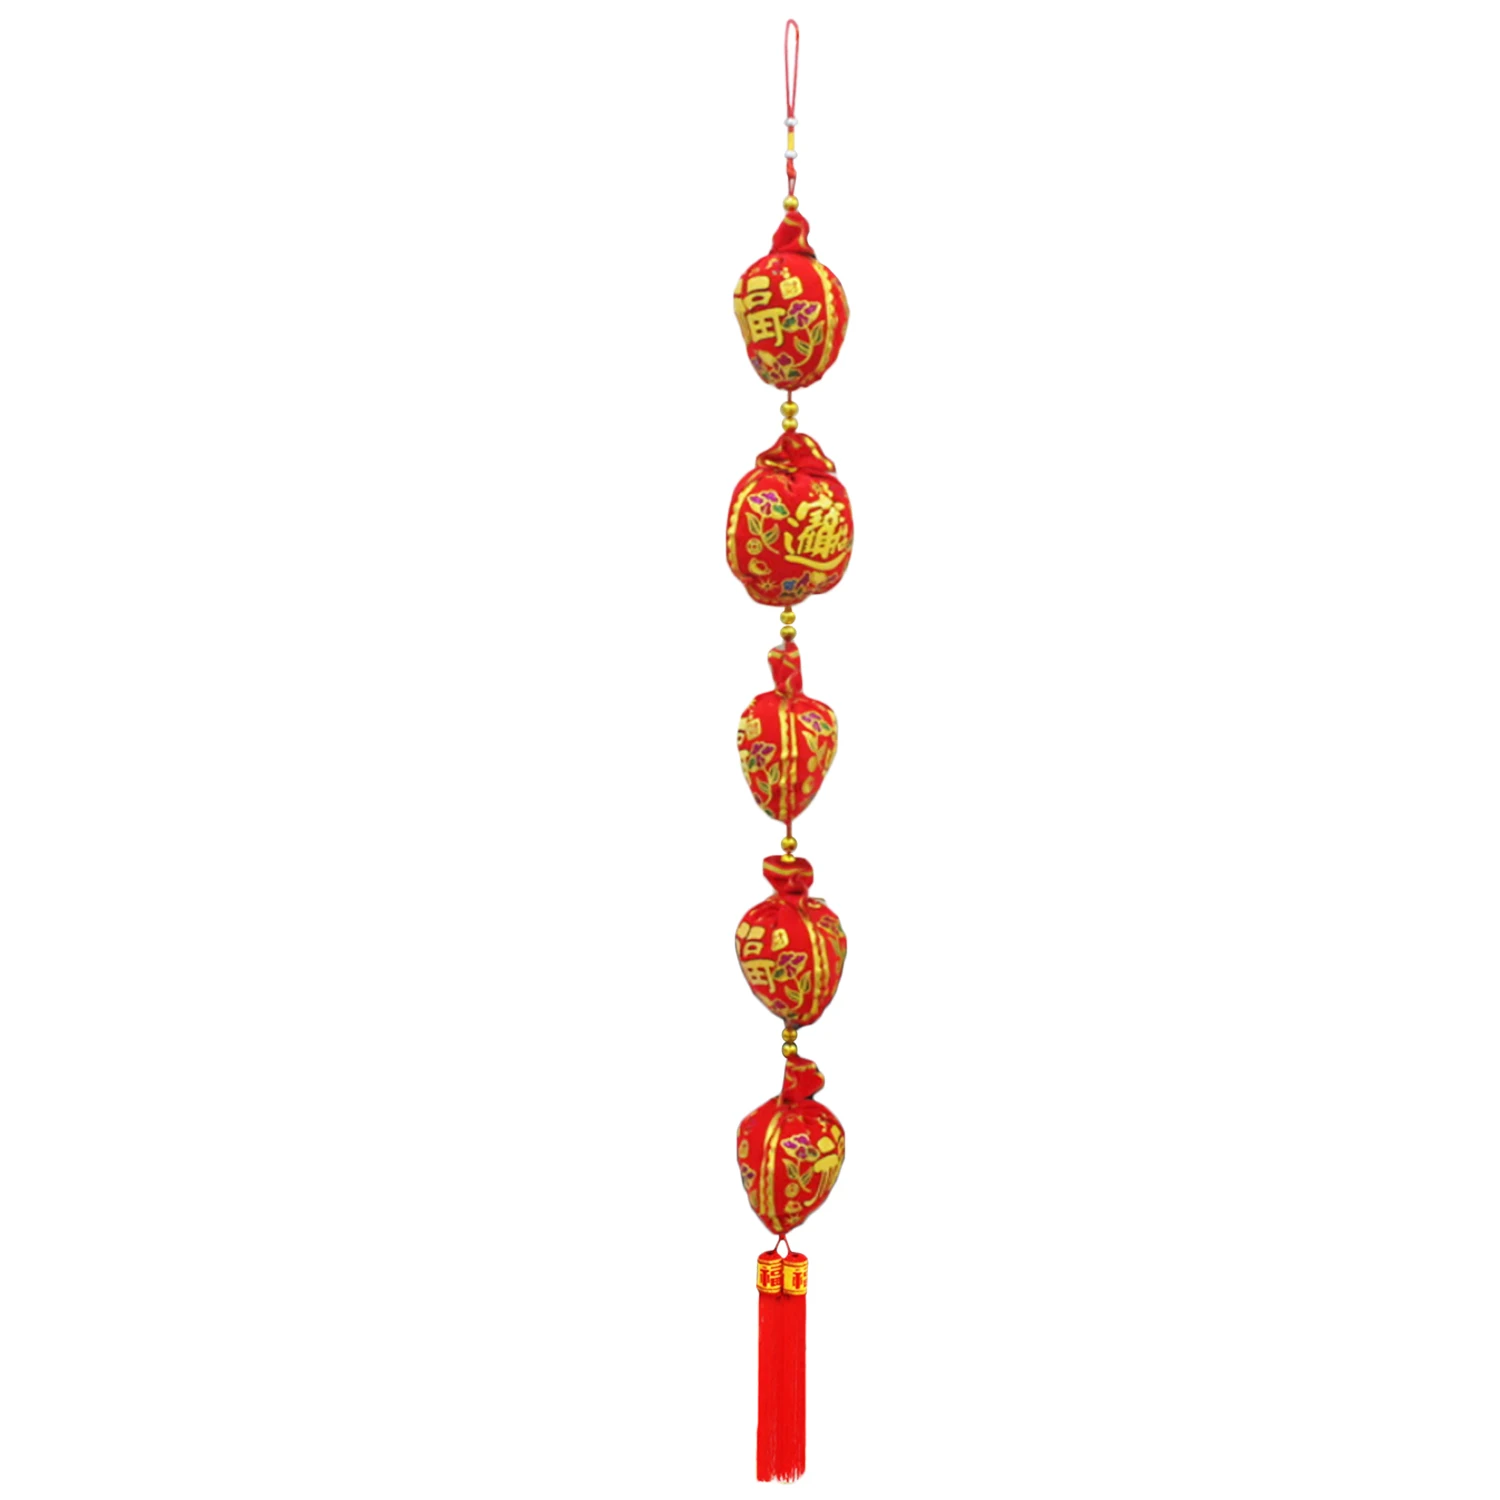 Behogar 122 см китайский новый год Весенний фестиваль Lucky сумка строка висит украшение орнамент для дома торговый центр Ресторан офис